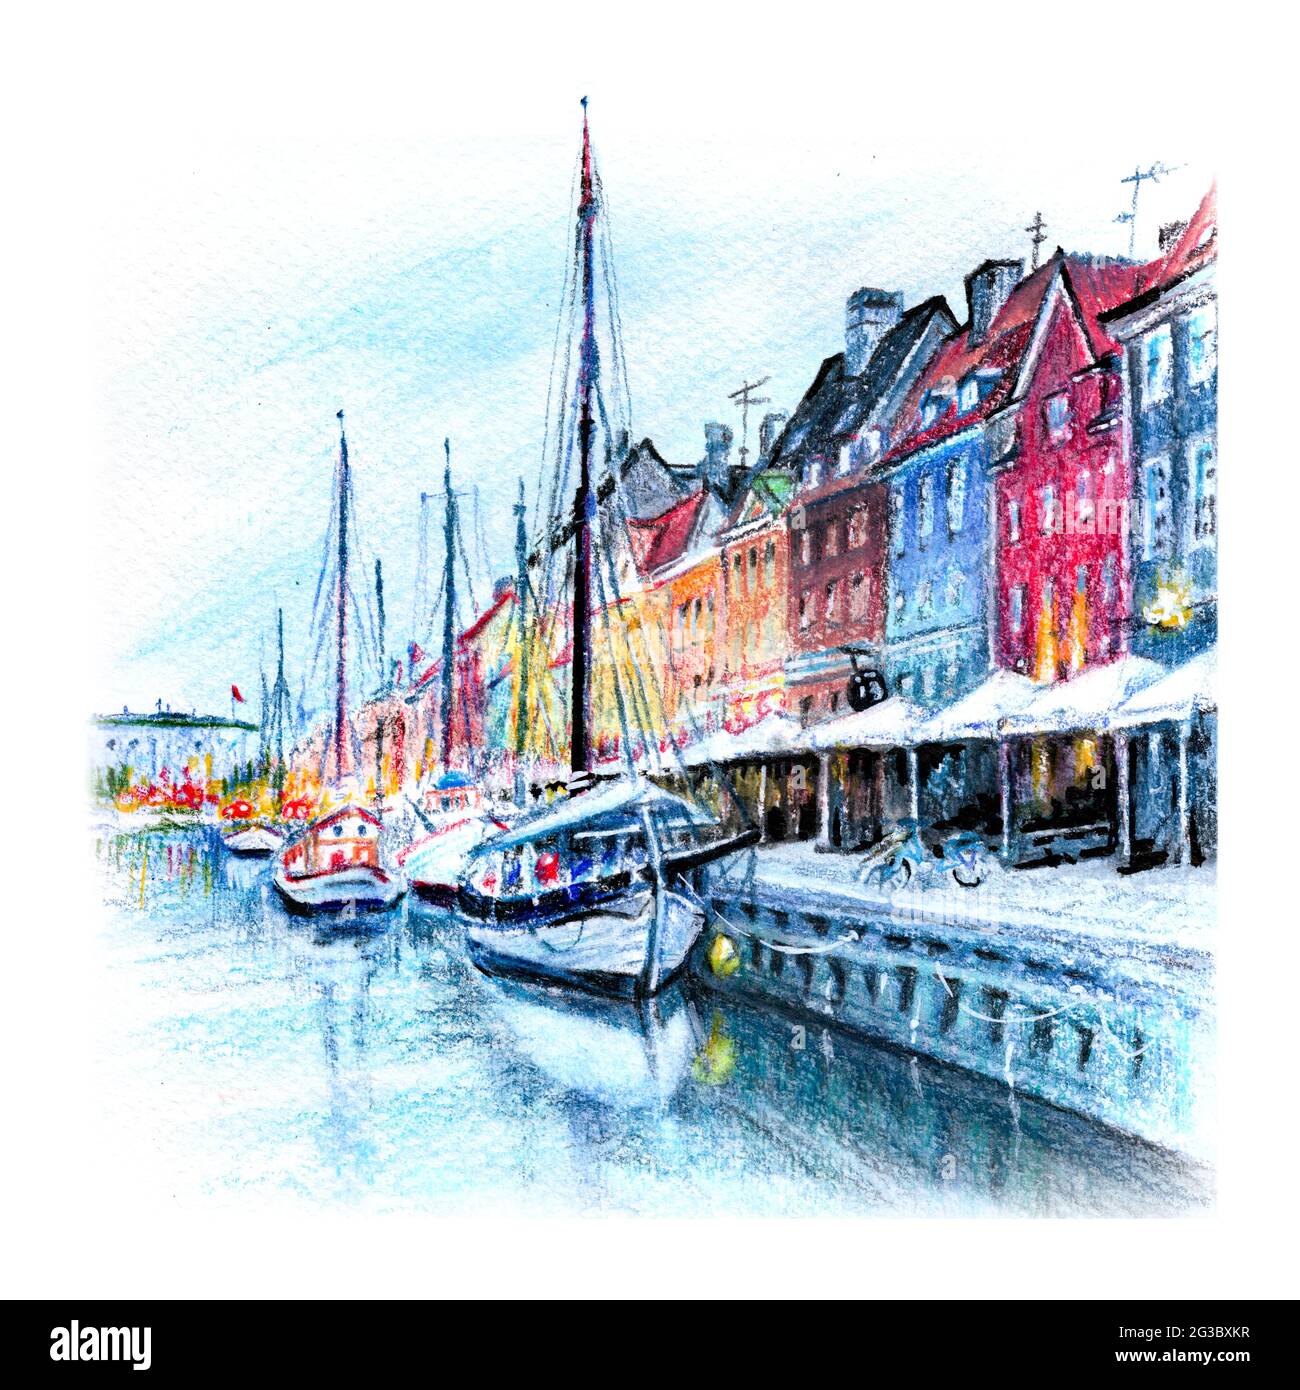 Aquarellstifte Skizze von Nyhavn mit bunten Fassaden alter Häuser und Schiffe in der Altstadt von Kopenhagen, der Hauptstadt Dänemarks. Stockfoto